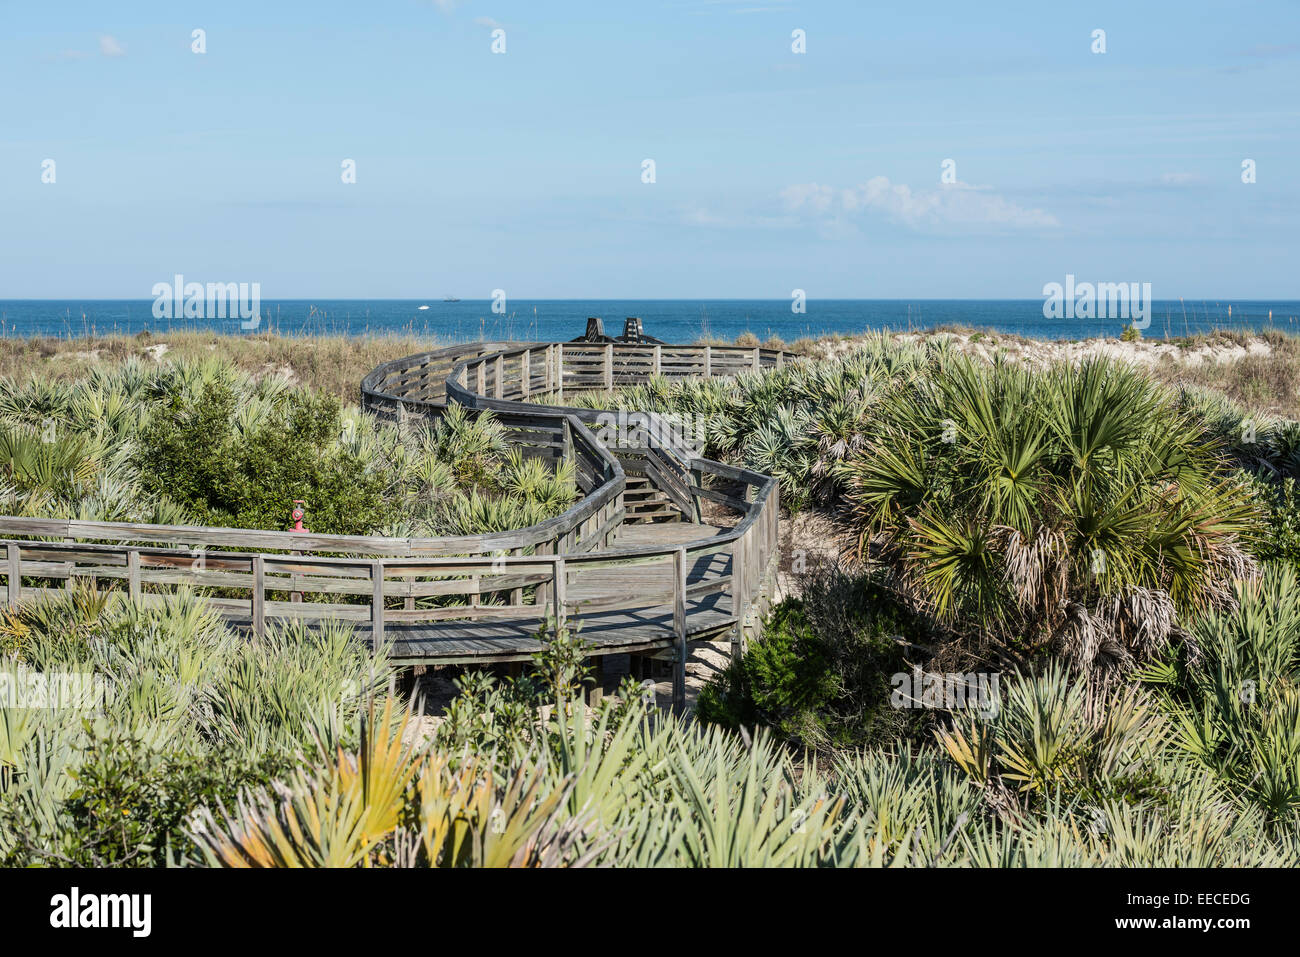 Promenade en serpentin en bois traversant l'habitat côtier des dunes de sable, on a vu des palmettos et de l'avoine de mer avec l'océan en arrière-plan, Daytona Beach. Banque D'Images